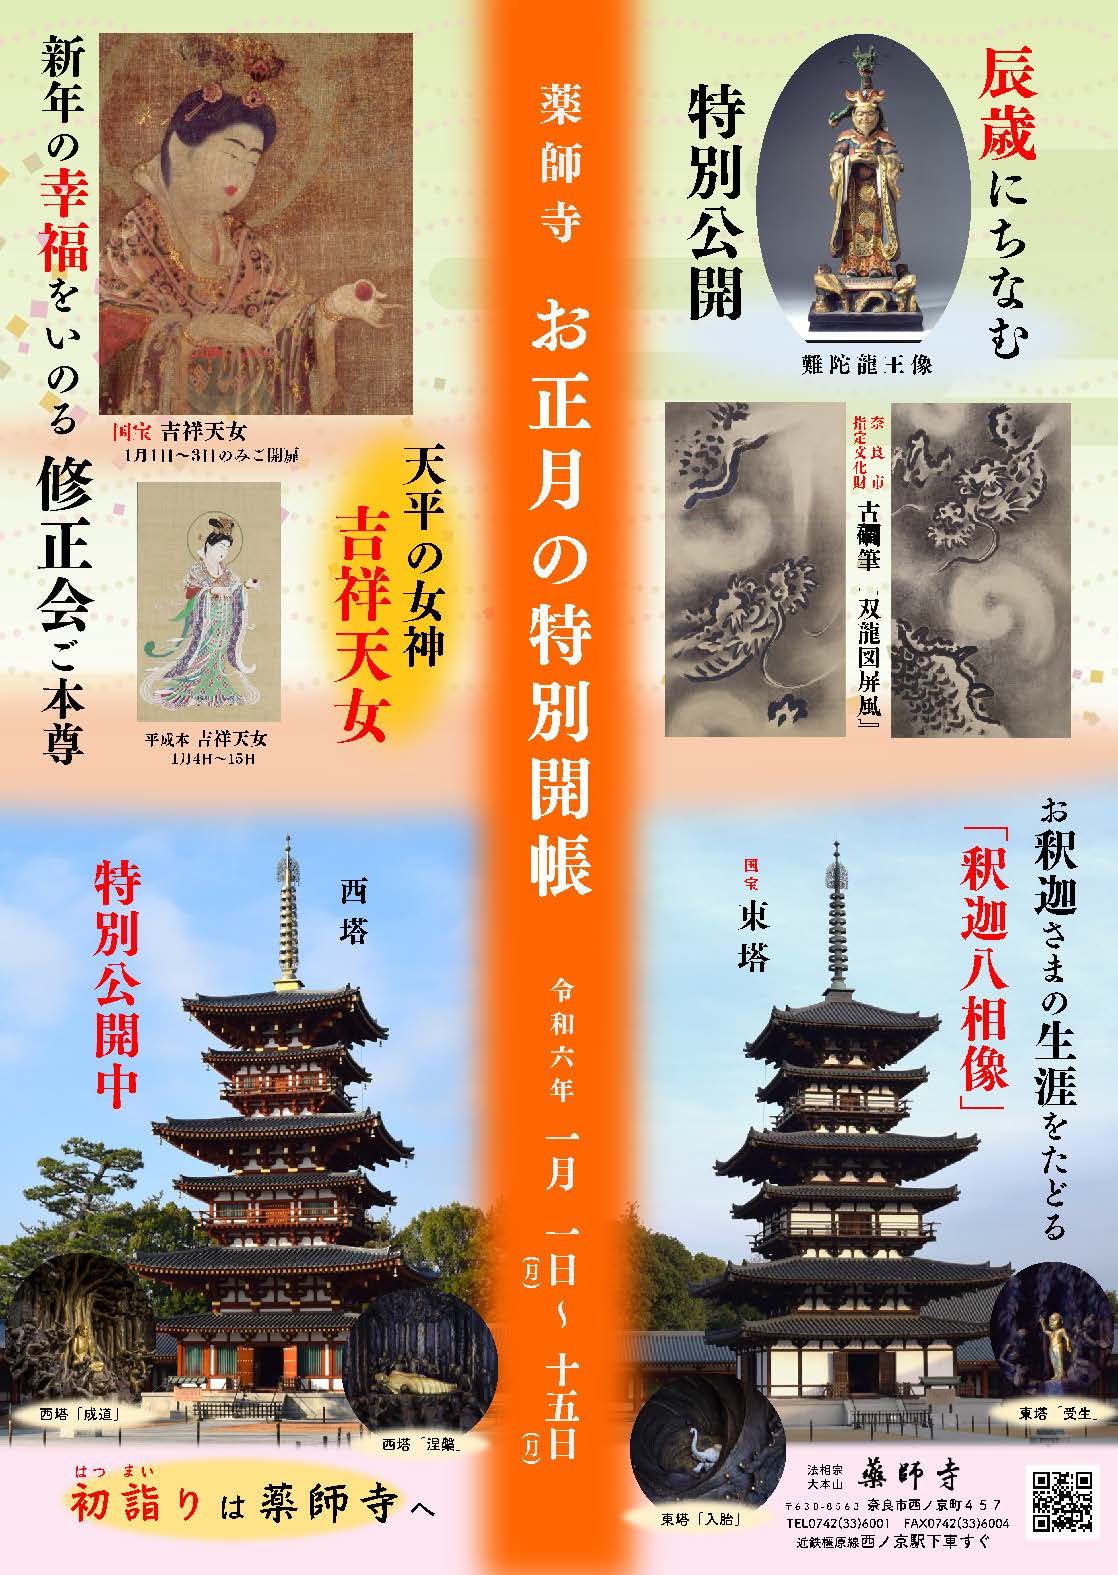 令和6年 薬師寺 お正月の特別公開 - 奈良薬師寺 公式サイト|Yakushiji 